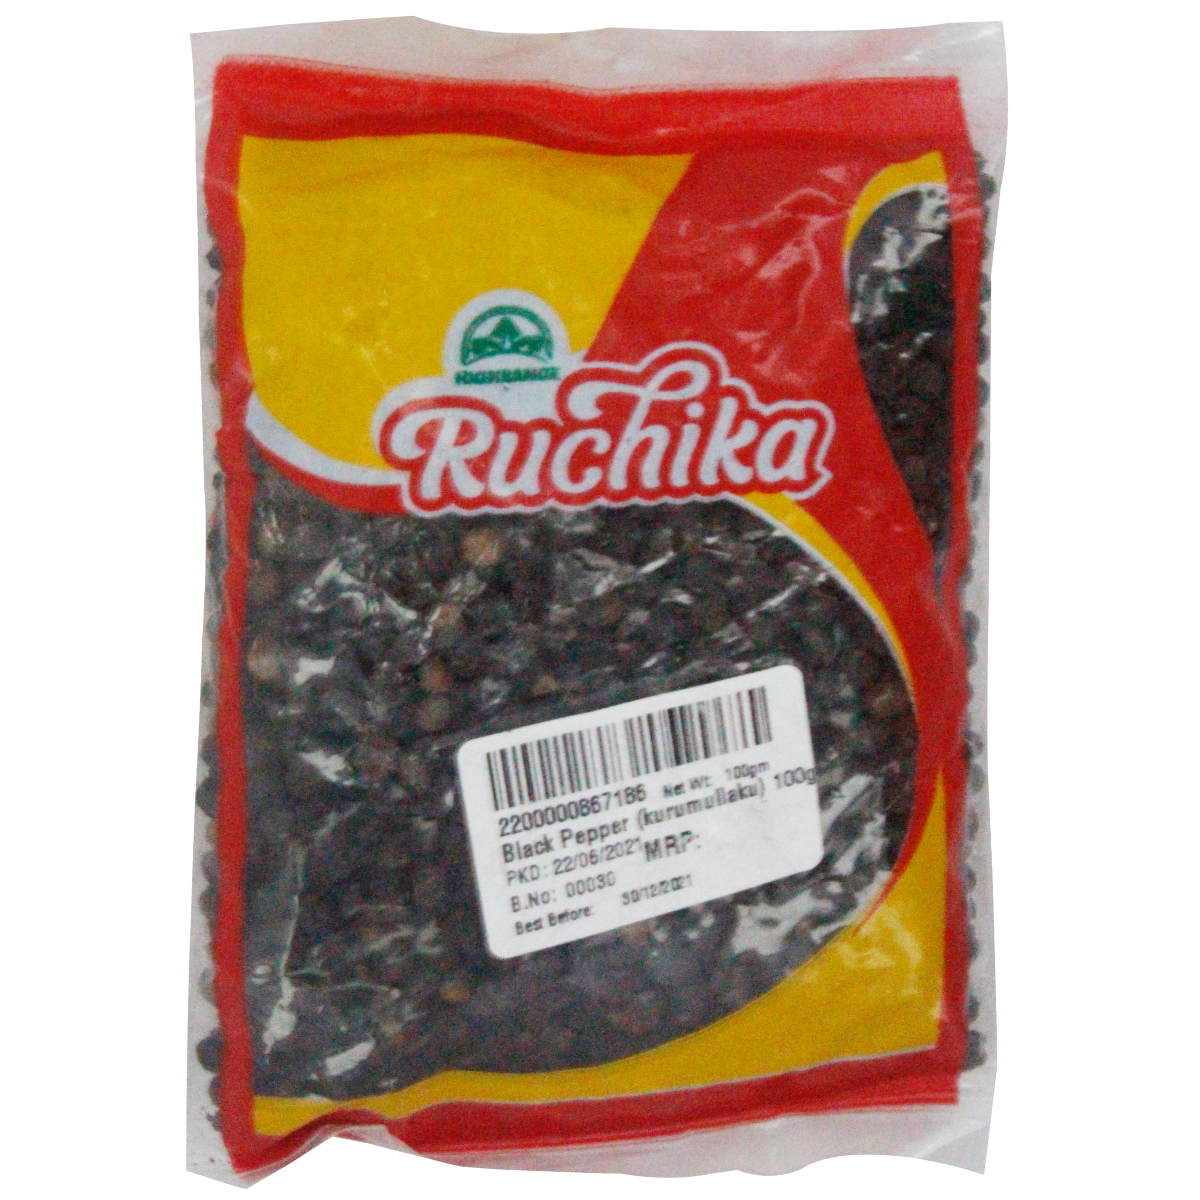 Ruchika Black Pepper 100g